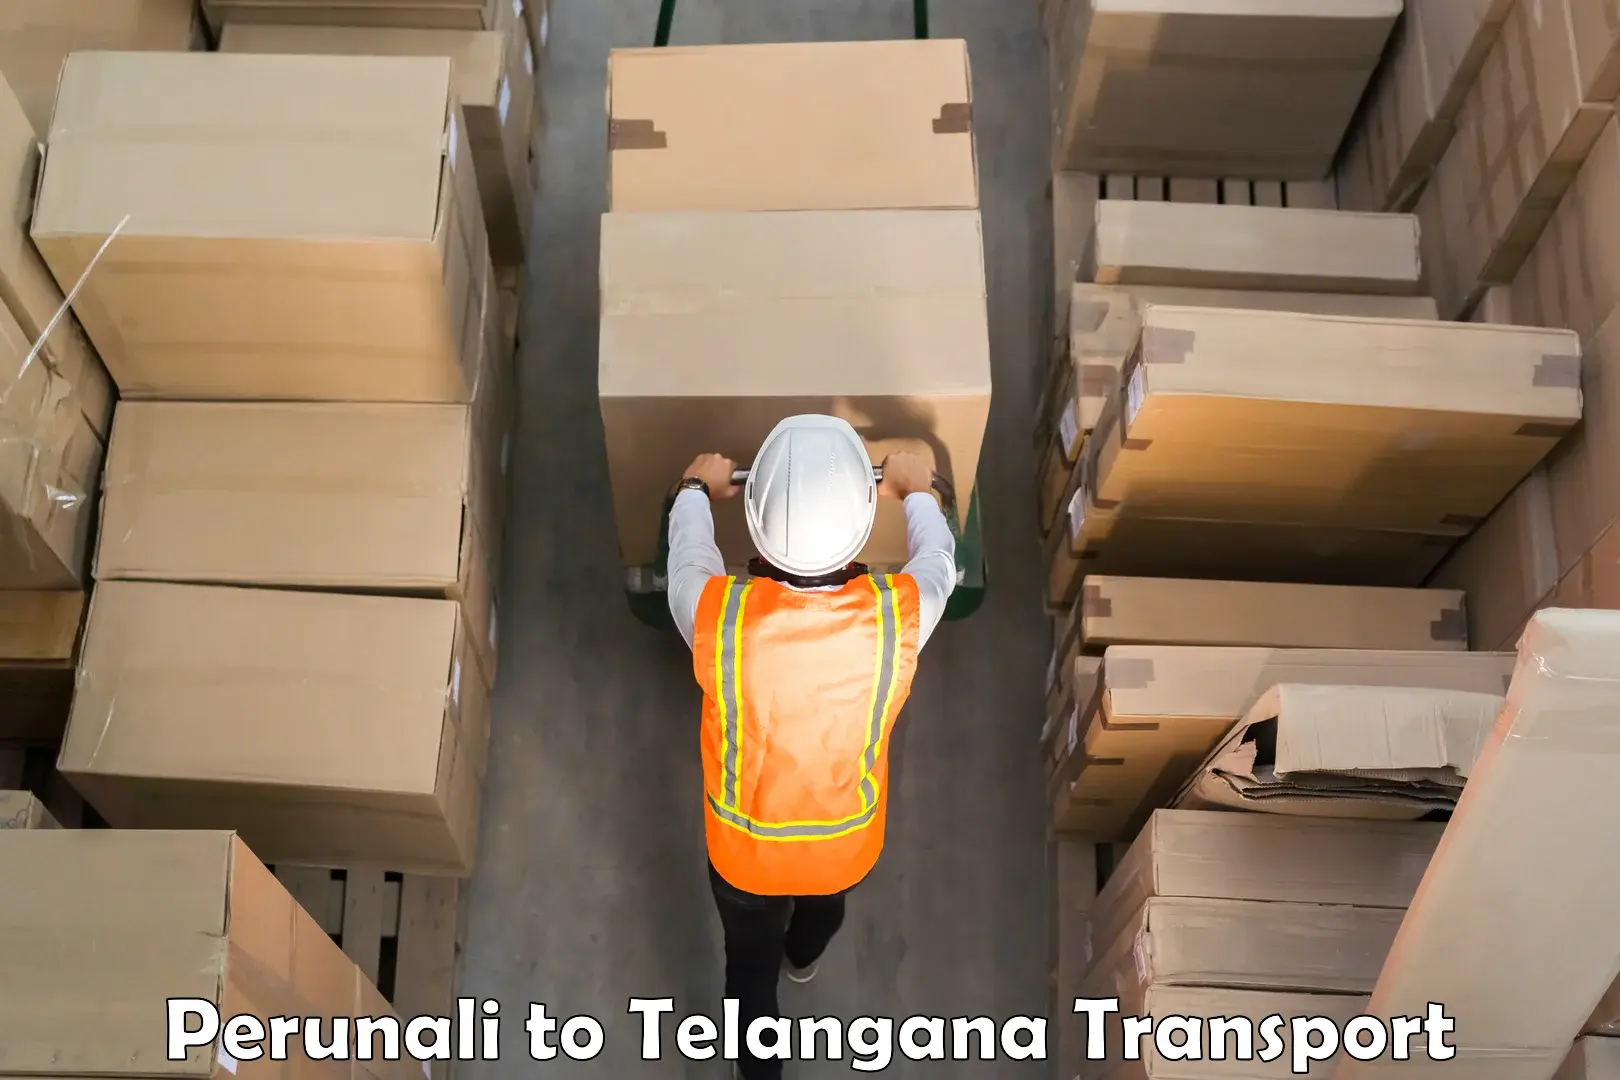 Furniture transport service in Perunali to Alair